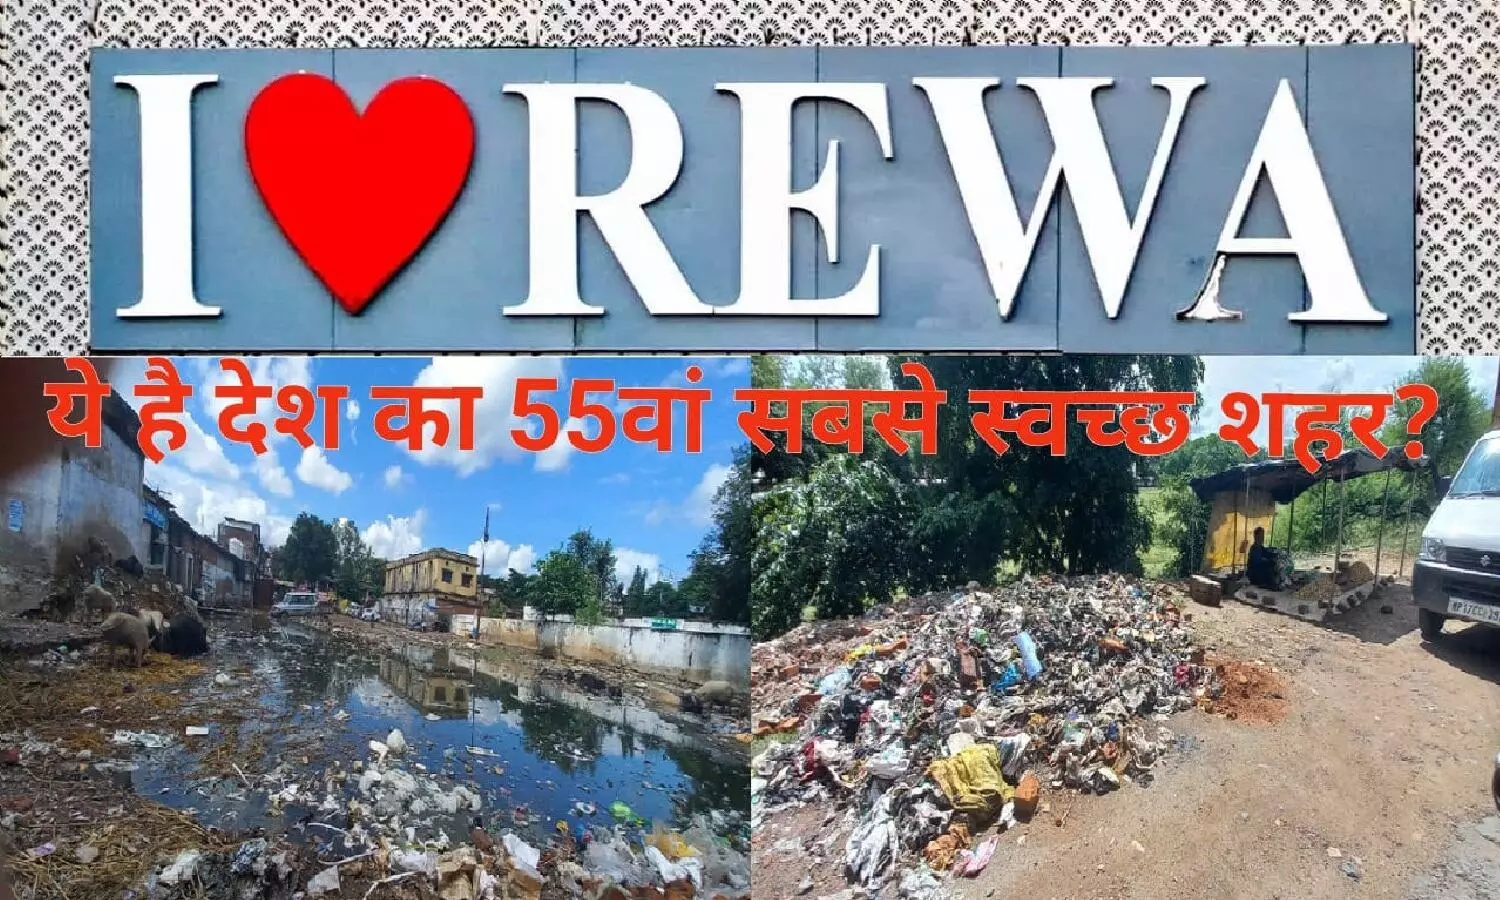 घिनहाइये आप रीवा में हैं: स्वच्छता के मामले में अगर रीवा की रैंक 55 है, तो भाईसाब देश की हालत बहुत खराब है